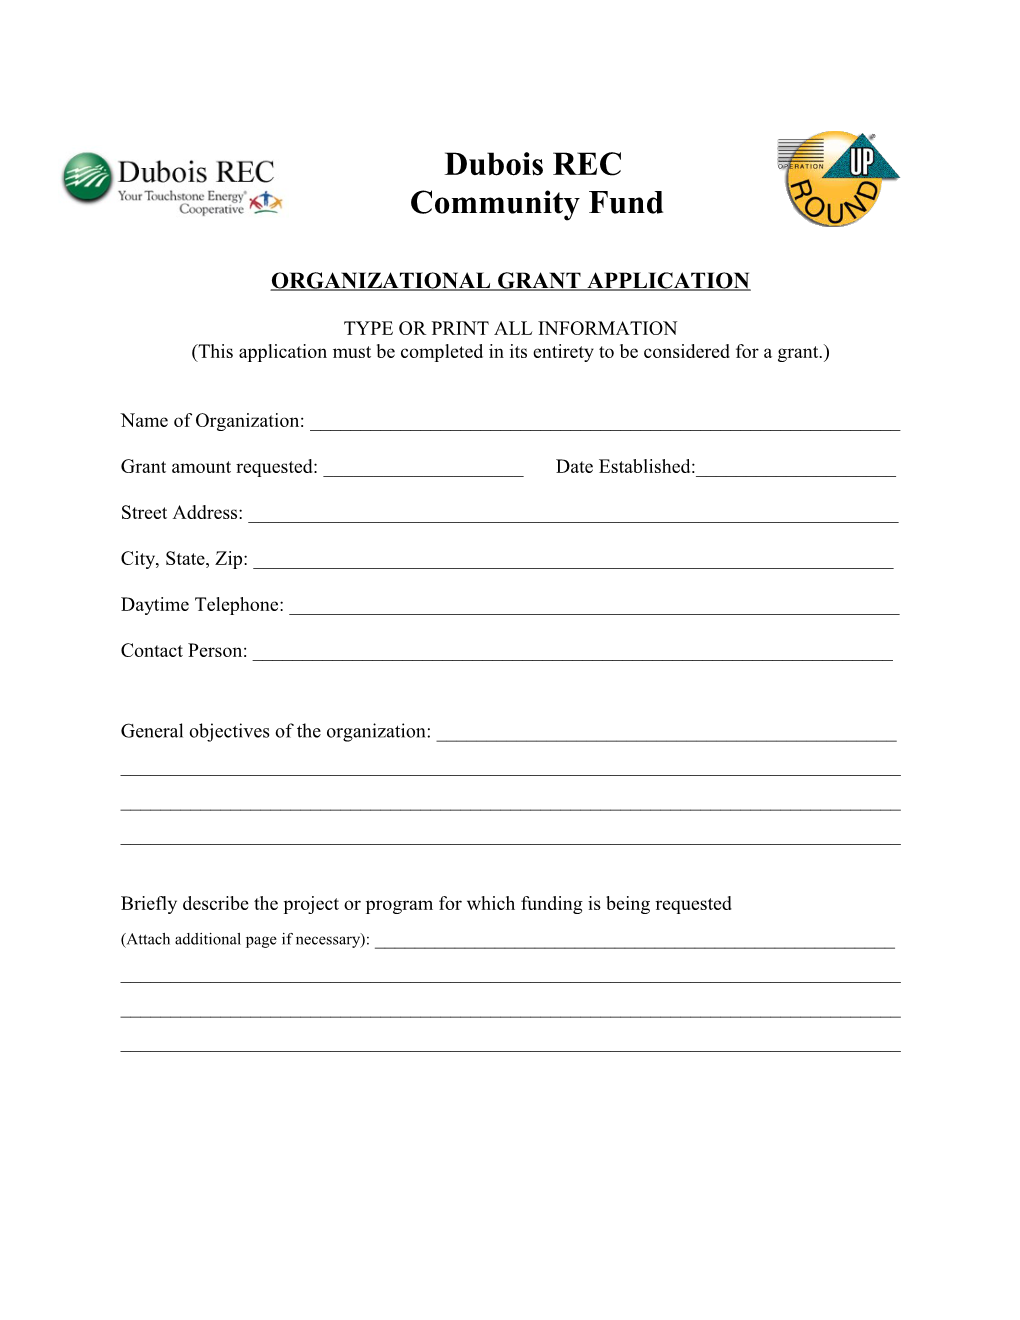 Dubois REC Community Fund, Inc